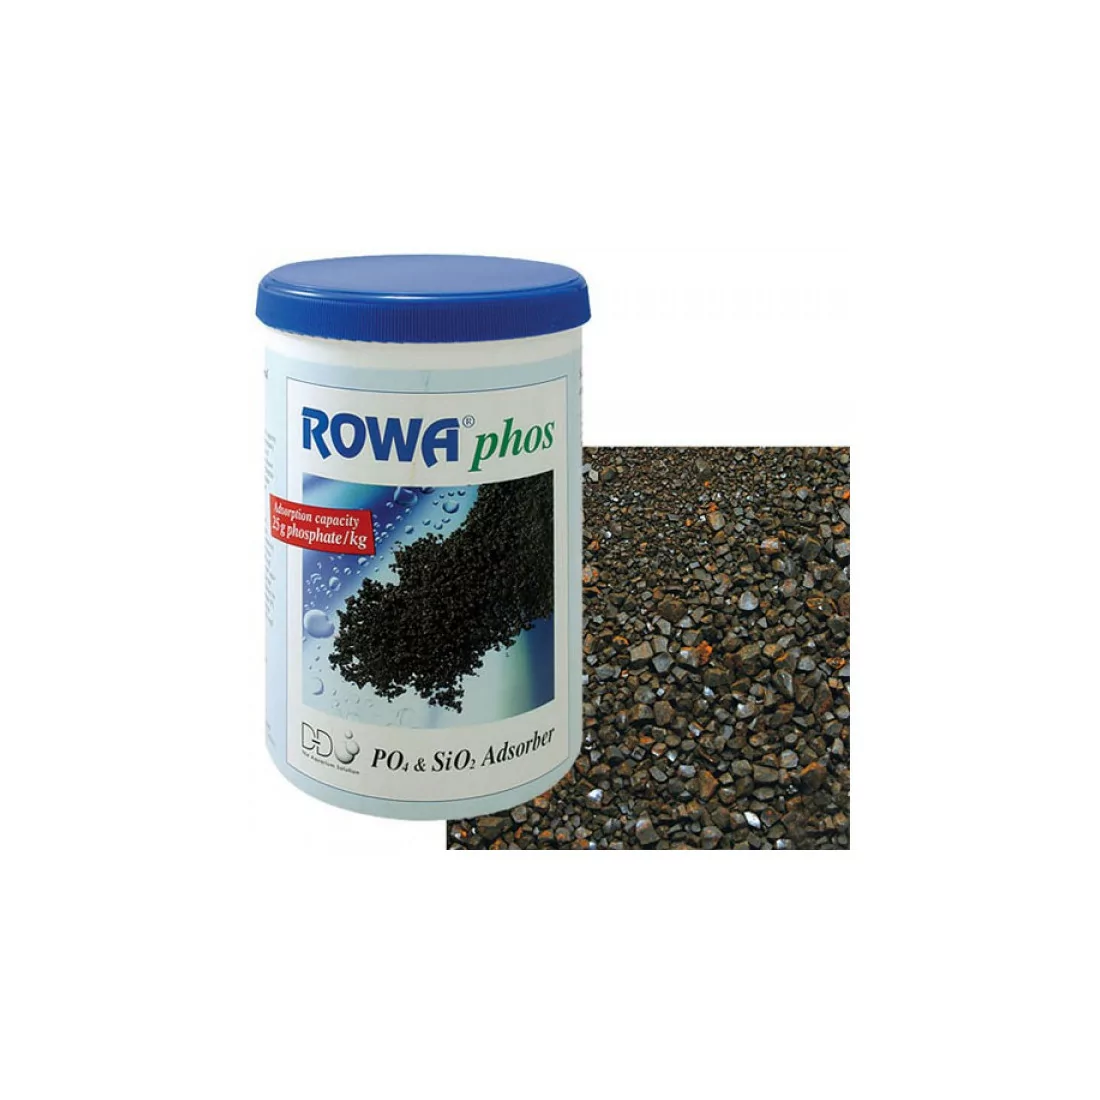 ROWAphos (résine anti phosphates) 1kg